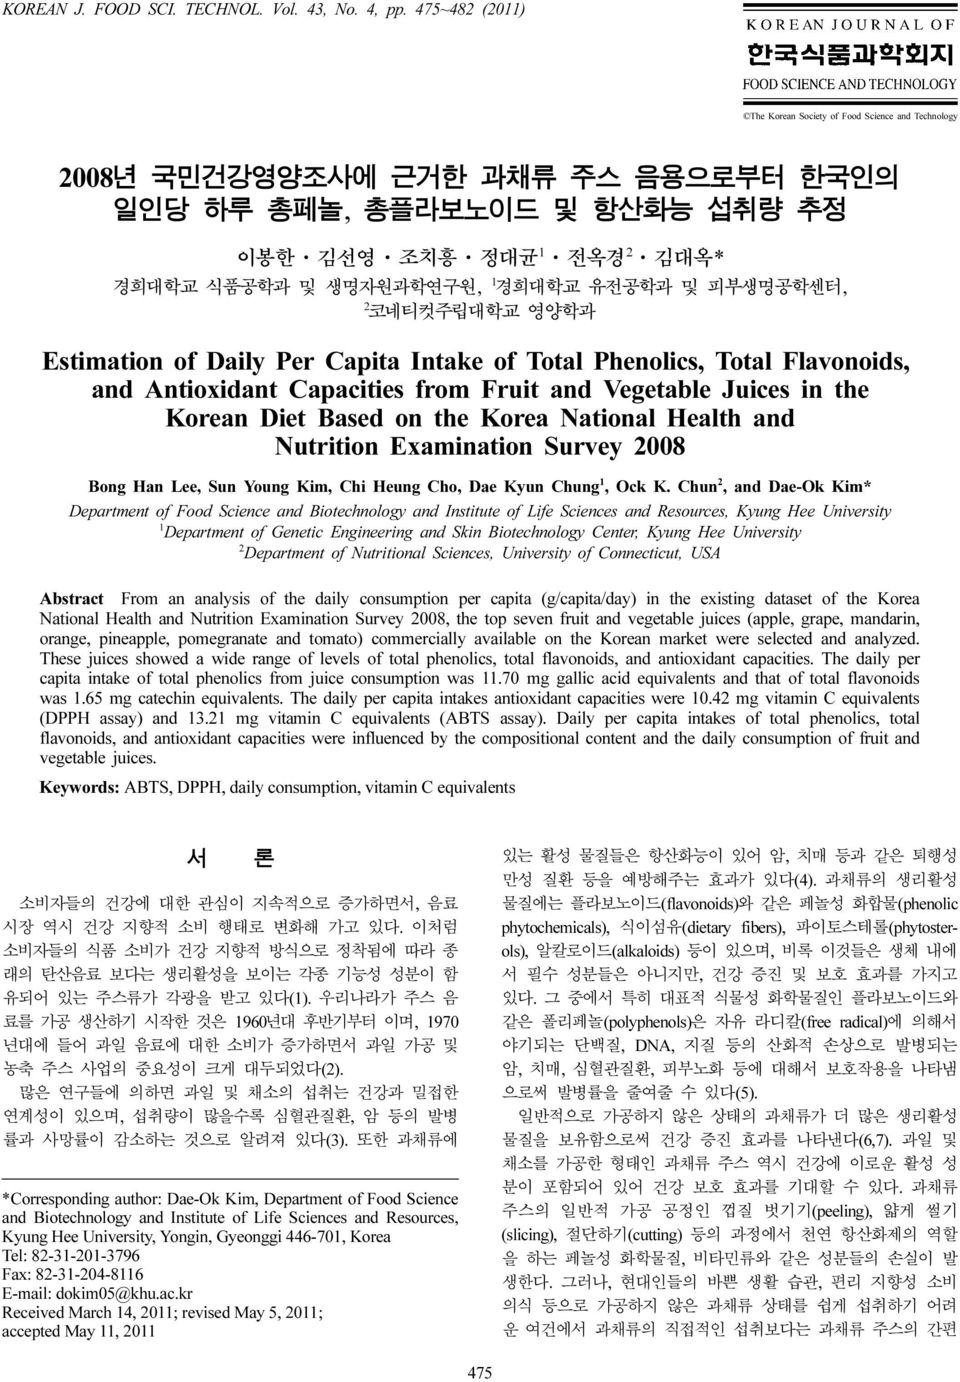 유전공학과 및 피부생명공학센터, 2 코네티컷주립대학교 영양학과 Estimation of Daily Per Capita Intake of Total Phenolics, Total Flavonoids, and Antioxidant Capacities from Fruit and Vegetable Juices in the Korean Diet Based on